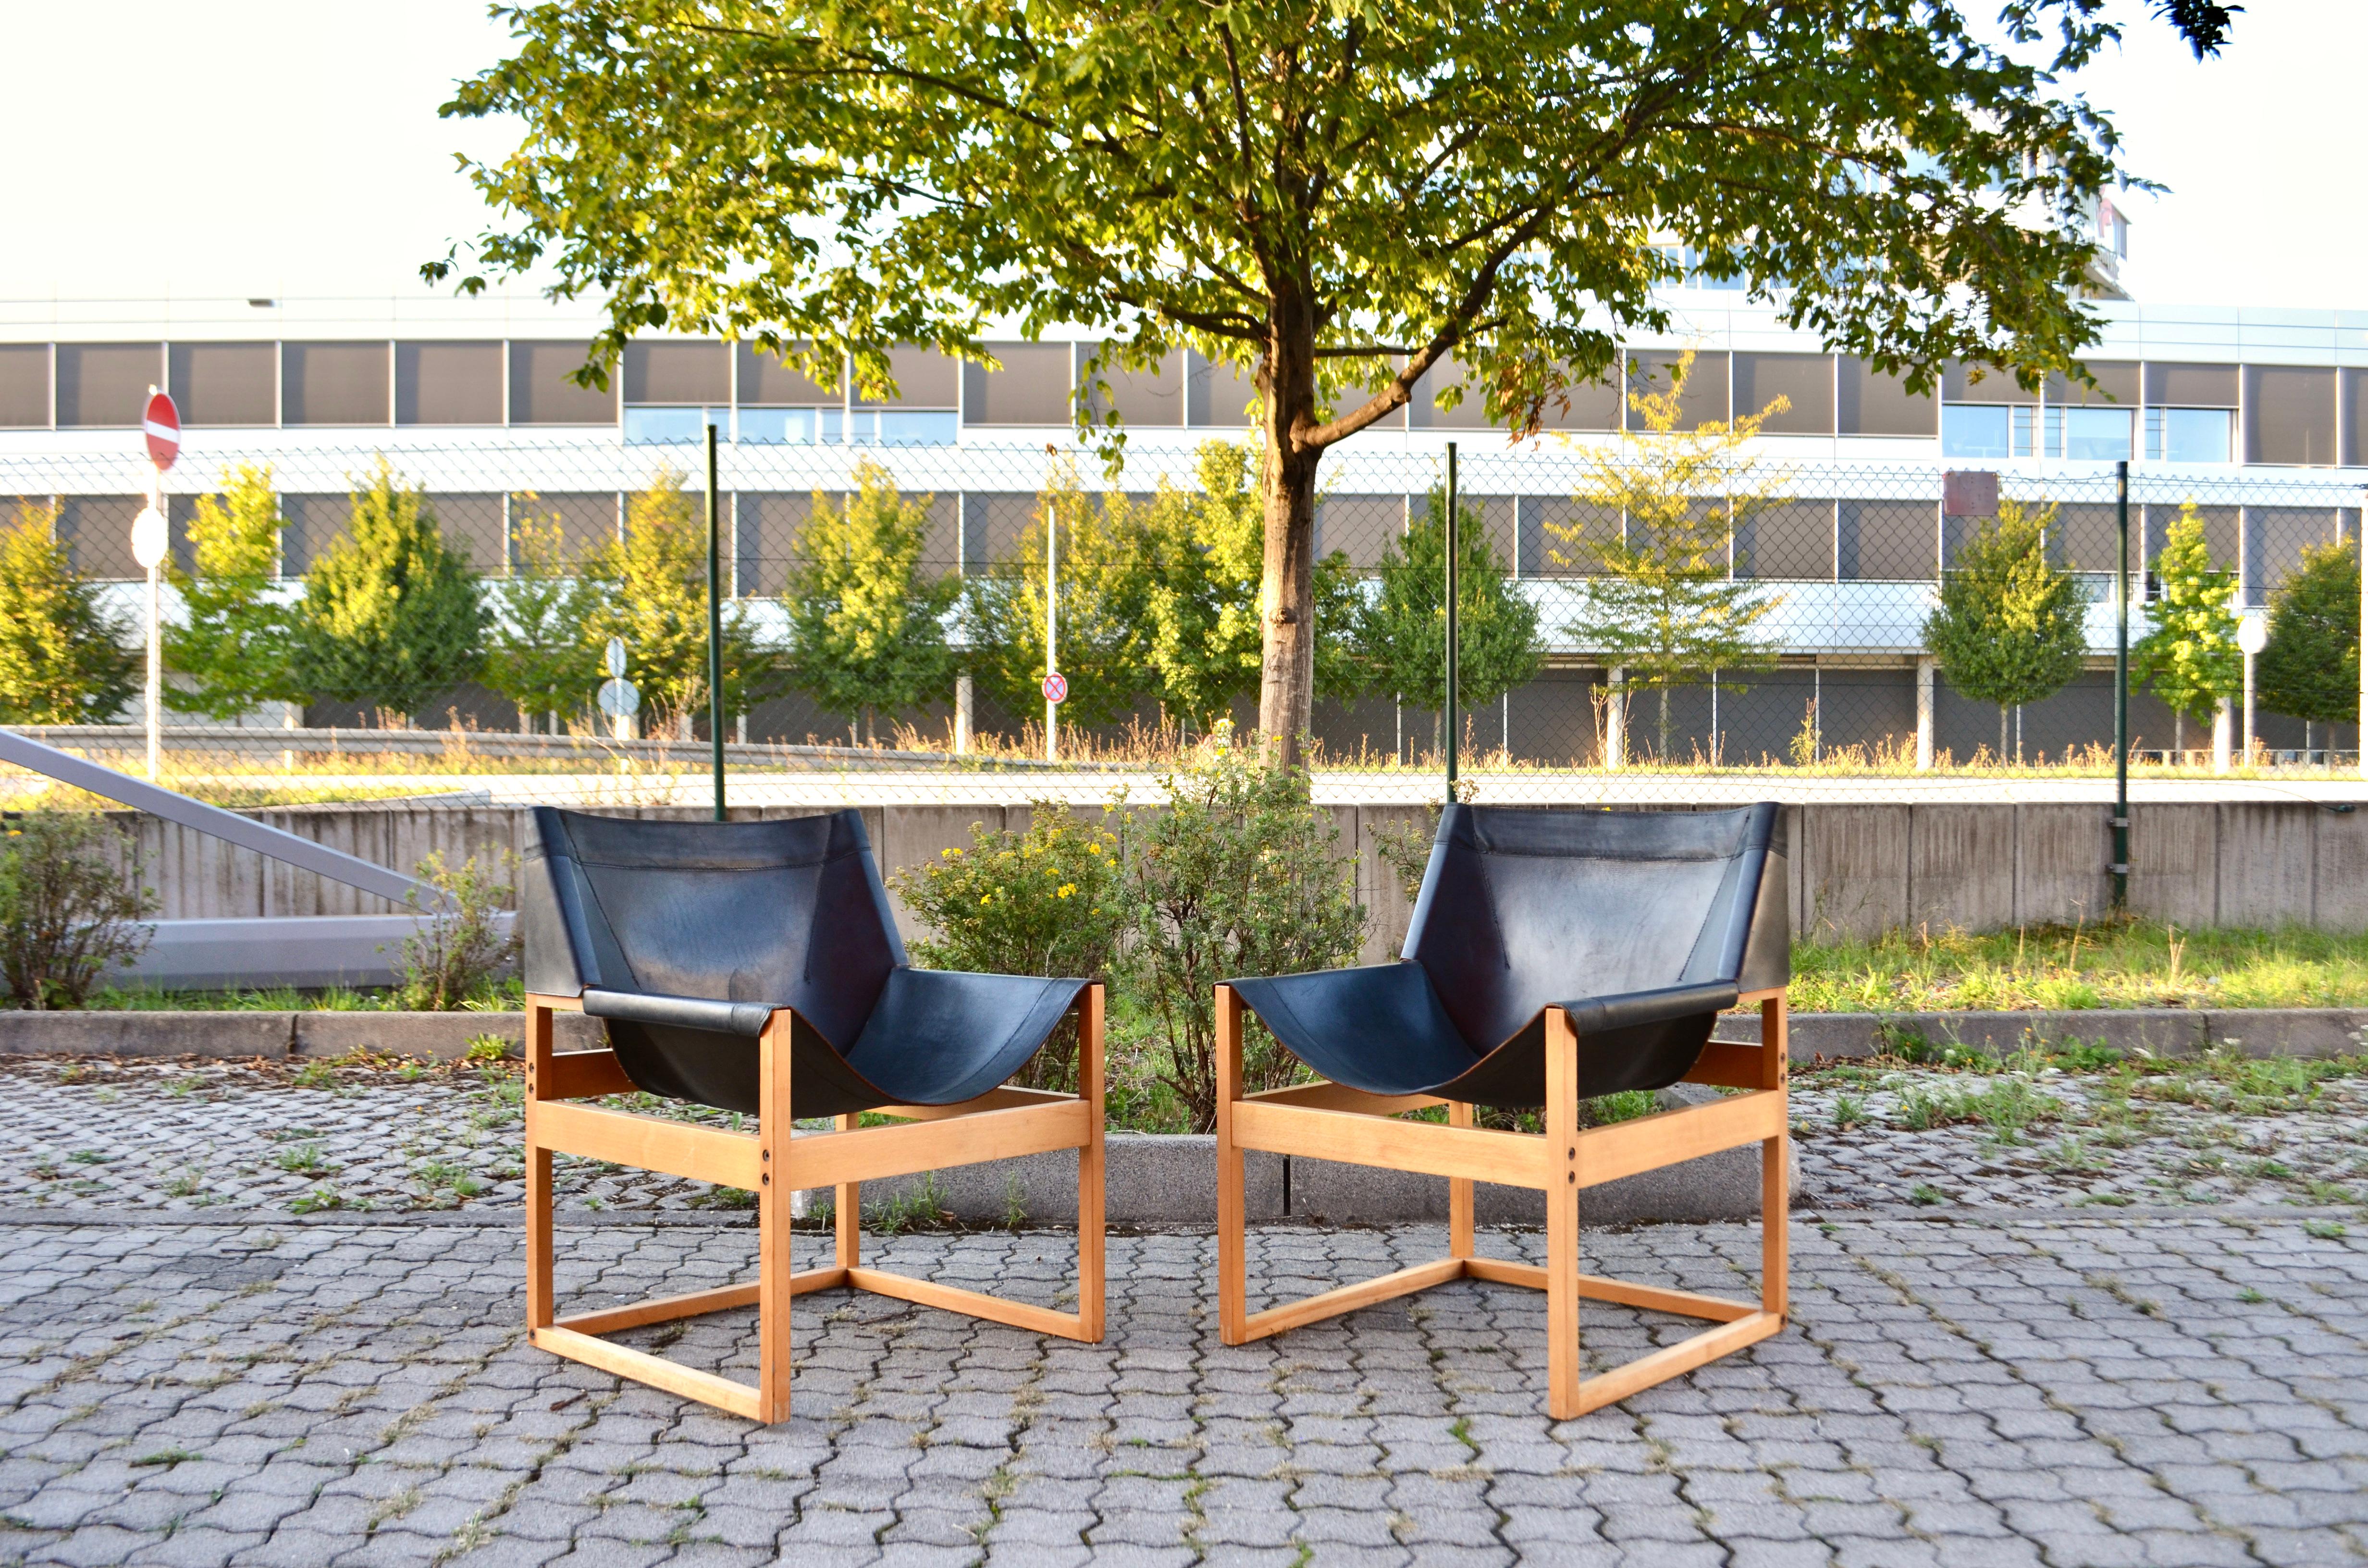 Cette chaise longue a été conçue par l'architecte Rainer Schell en 1964. Elle a été produite par le fabricant allemand Franz Schlapp Möbel.
Schell était un élève de l'architecte Egon Eiermann.
Le nom du modèle était Shell Chair avec le modèle